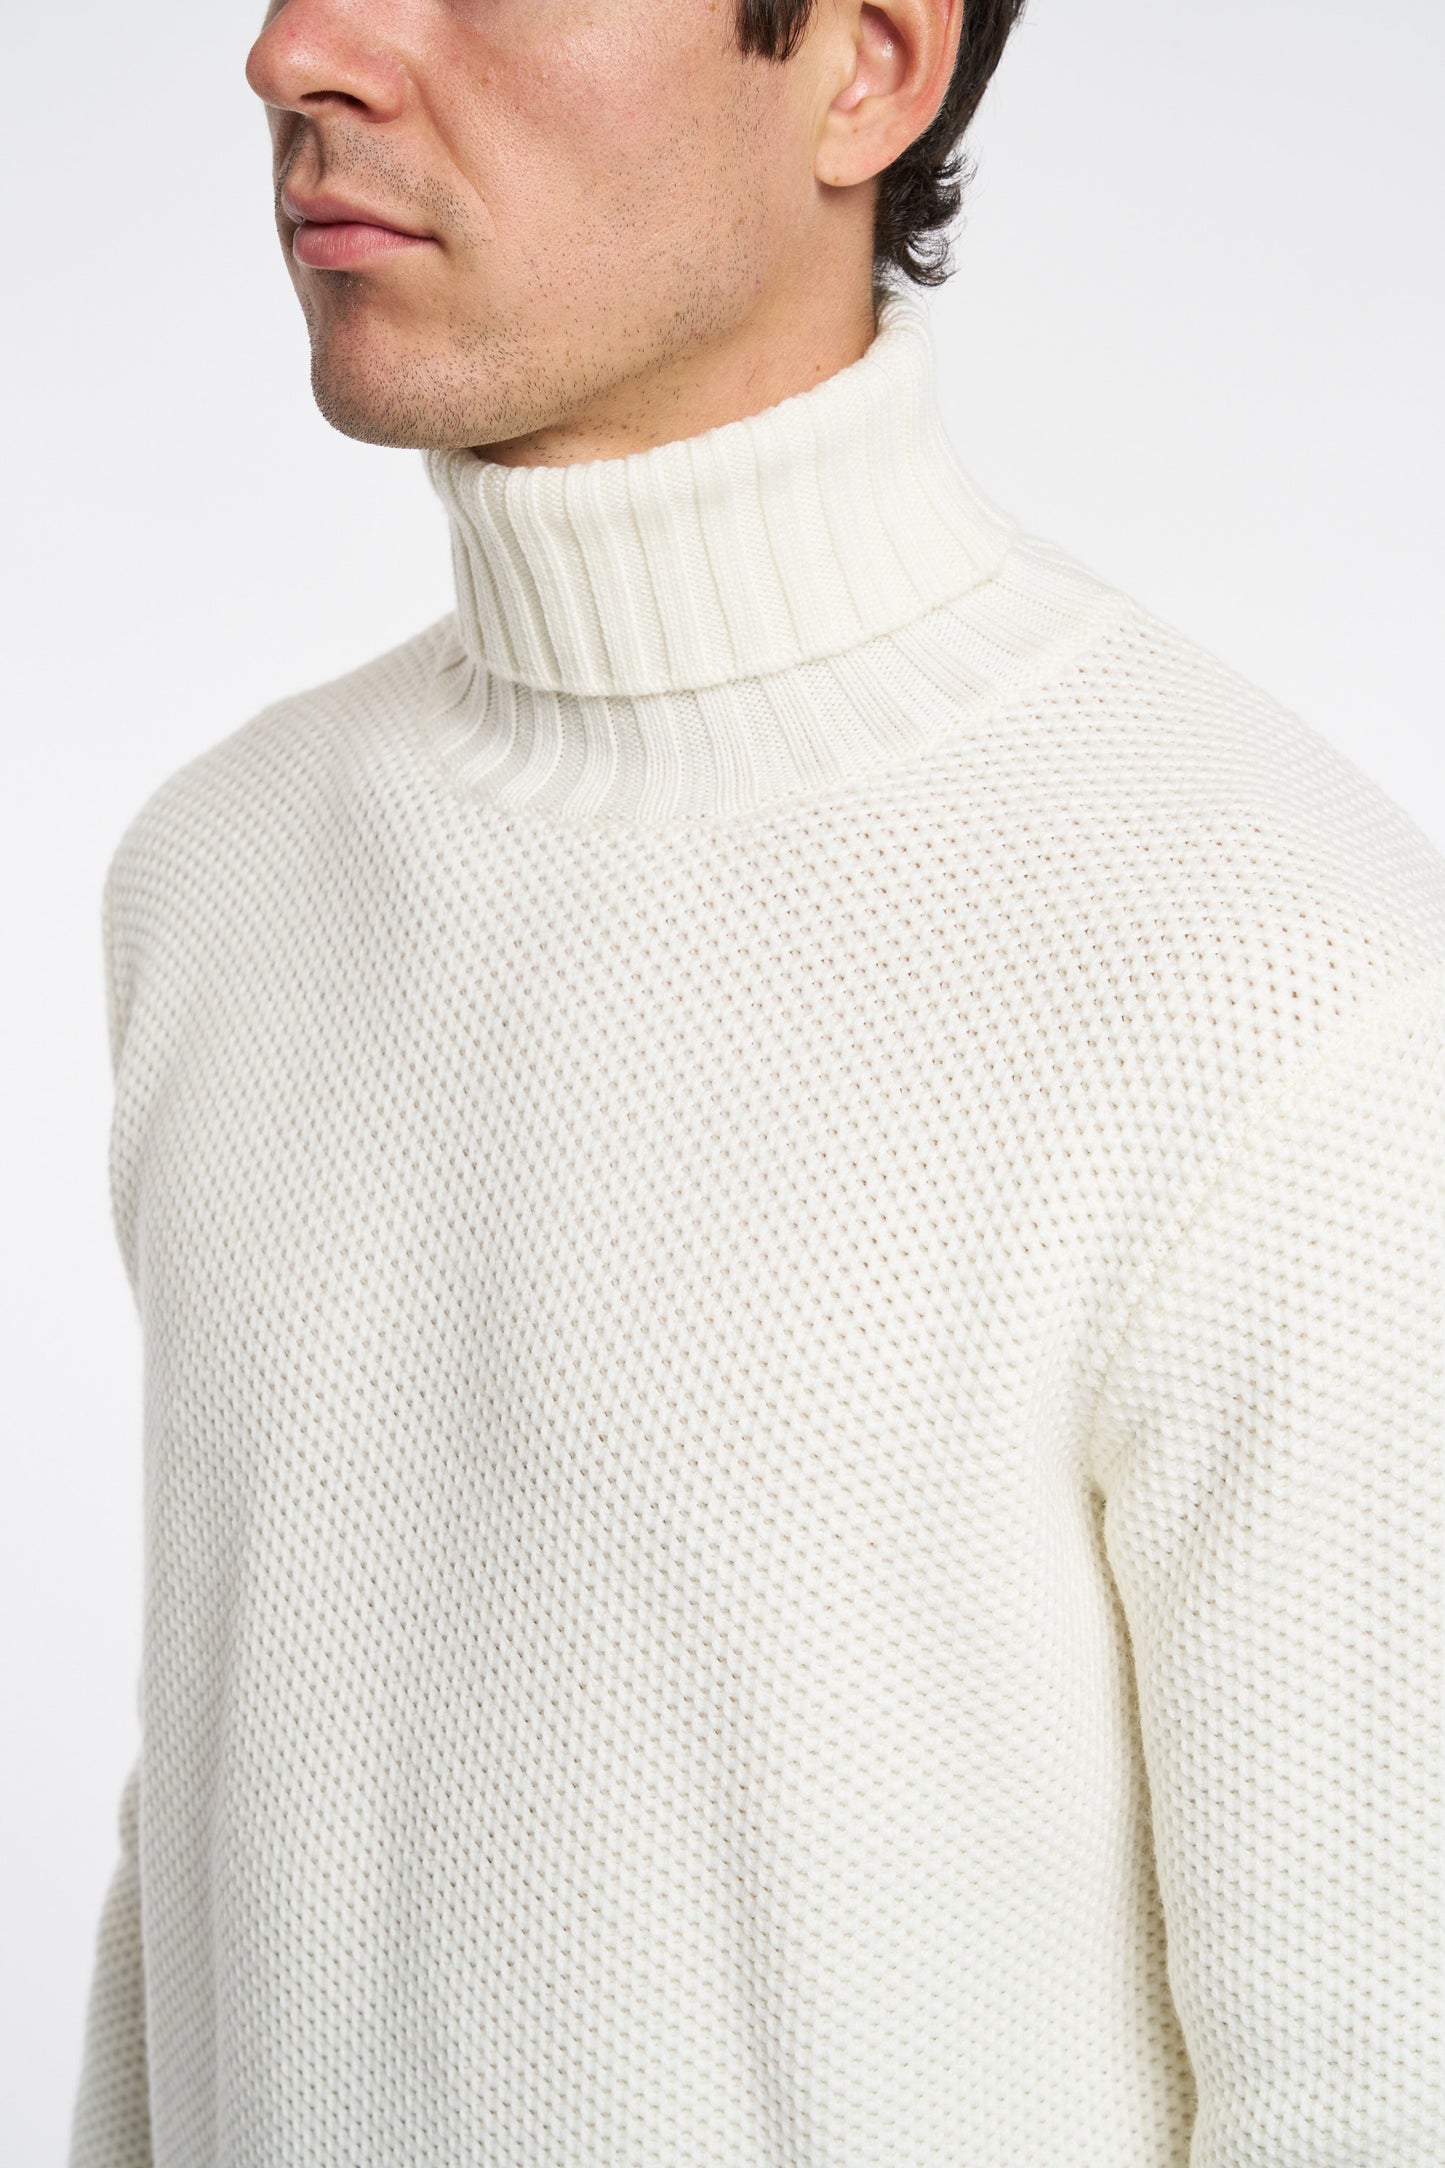  Filippo De Laurentiis Men's Beige Honeycomb Turtleneck Sweater Beige Uomo - 5